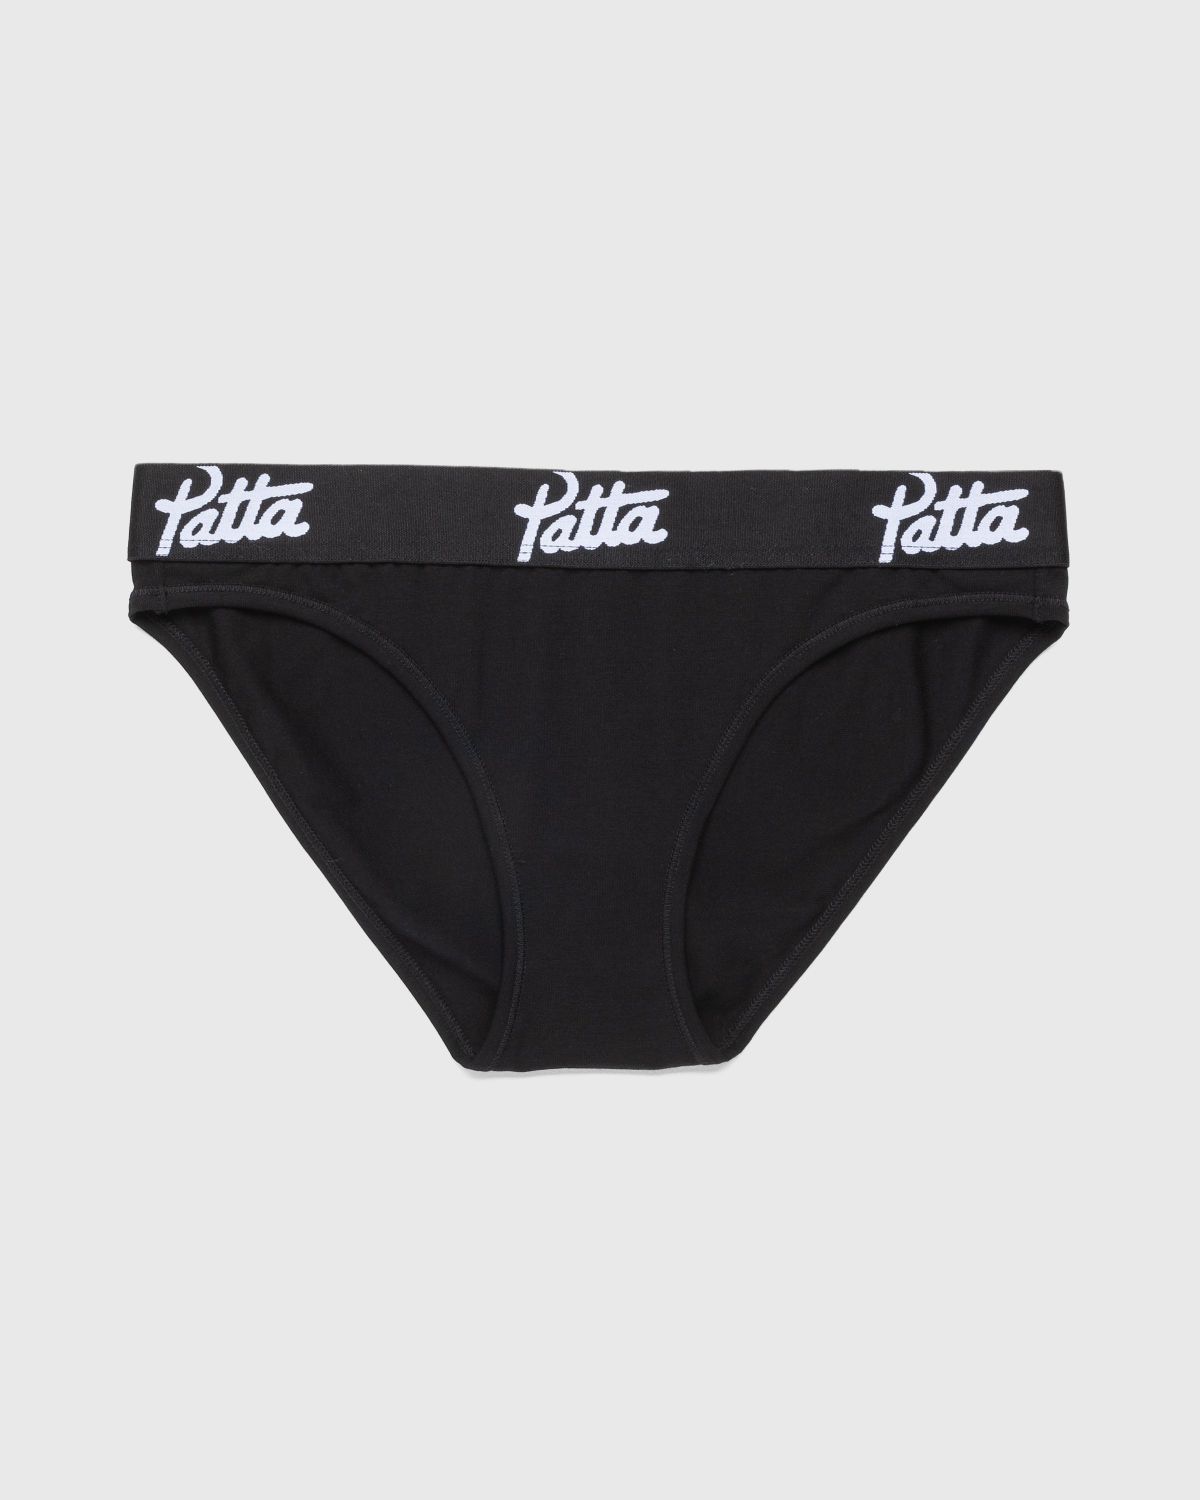 Patta – Women’s Underwear Brief Black - Briefs - Black - Image 1